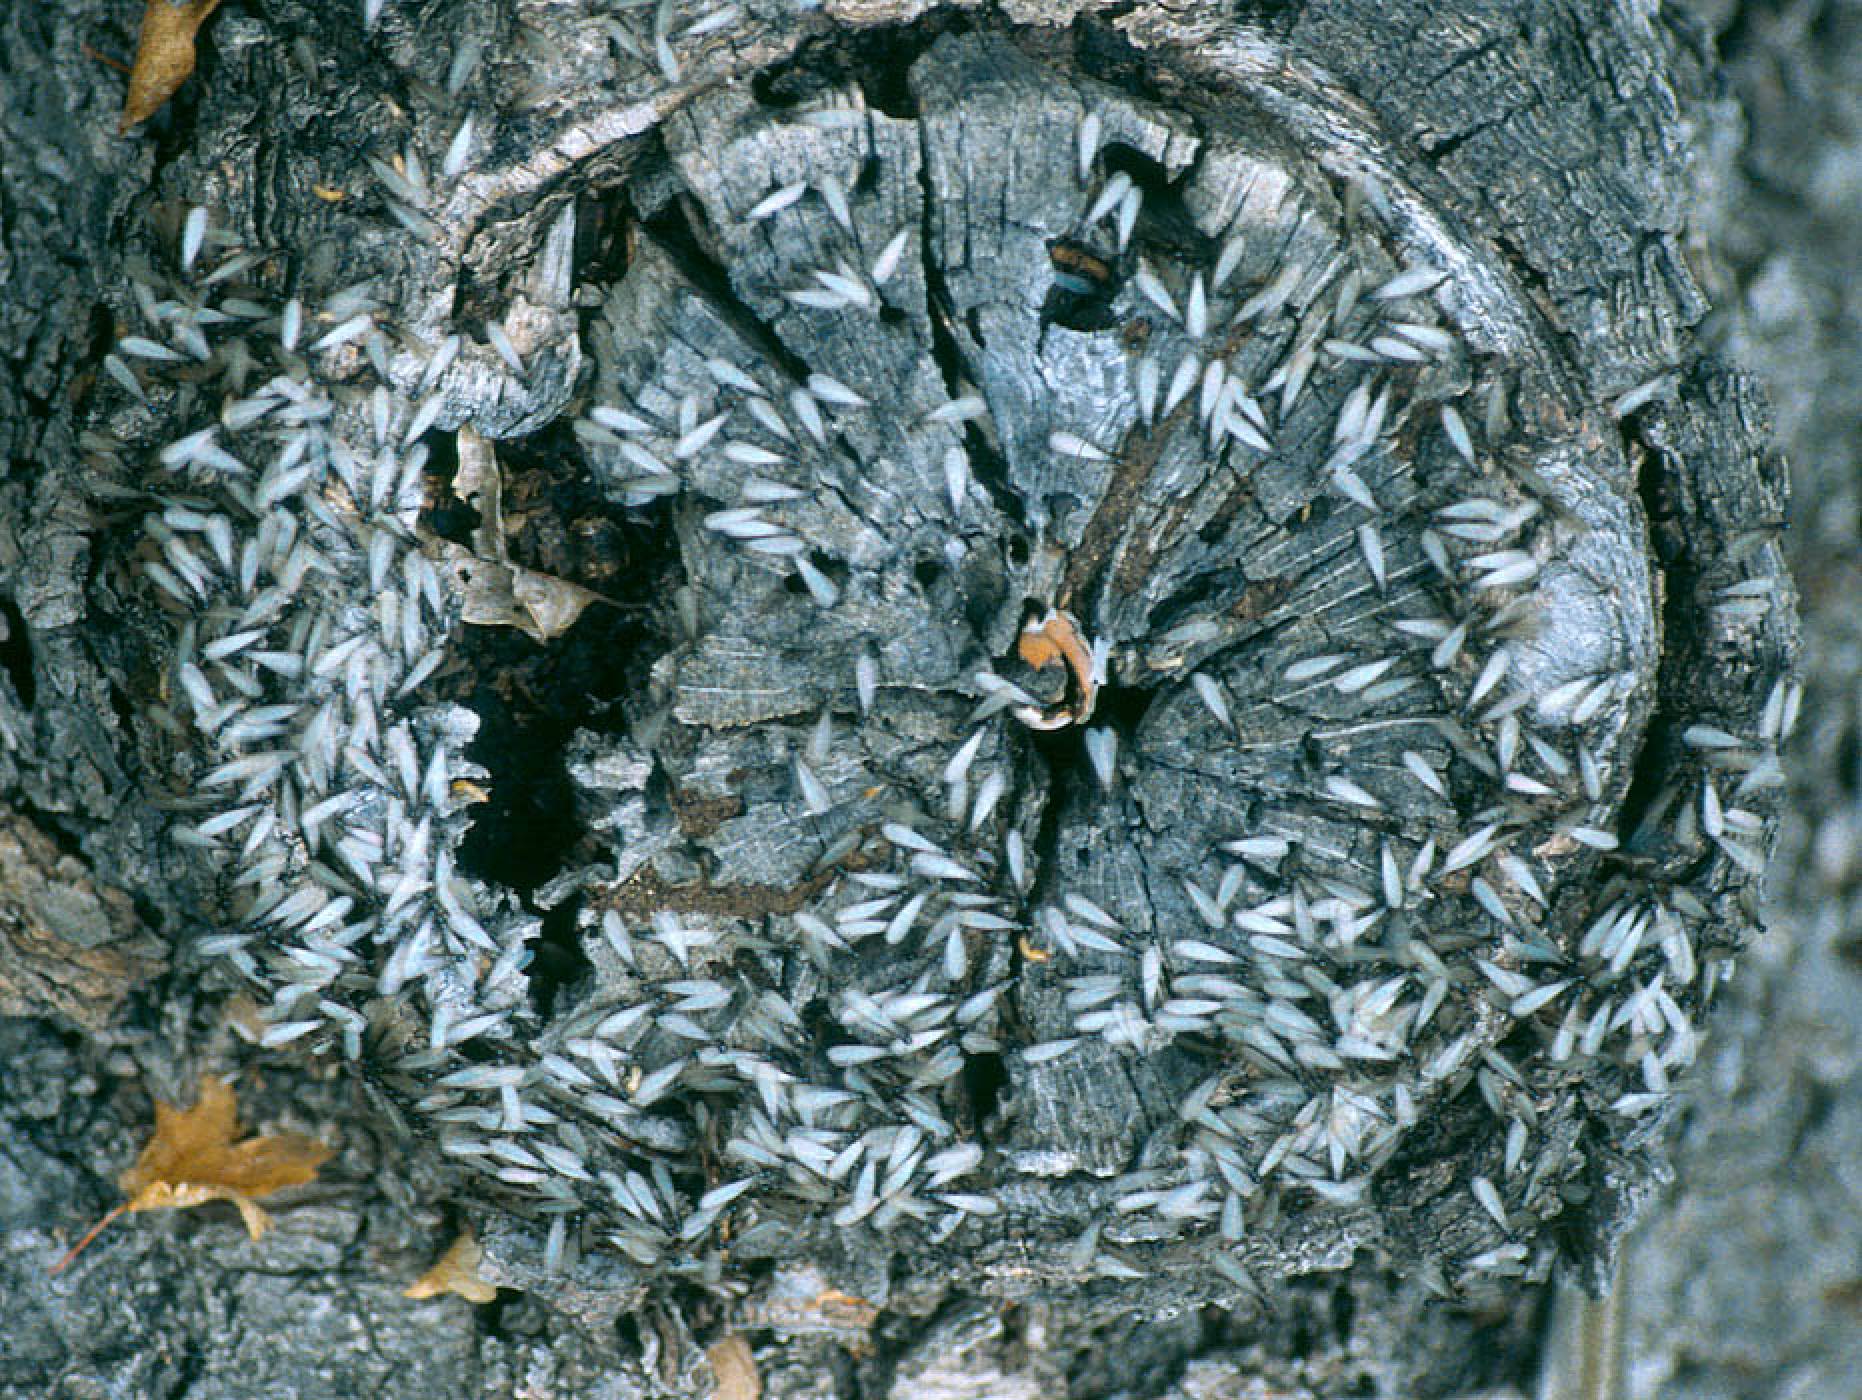 Subterranean Termites Swarmers